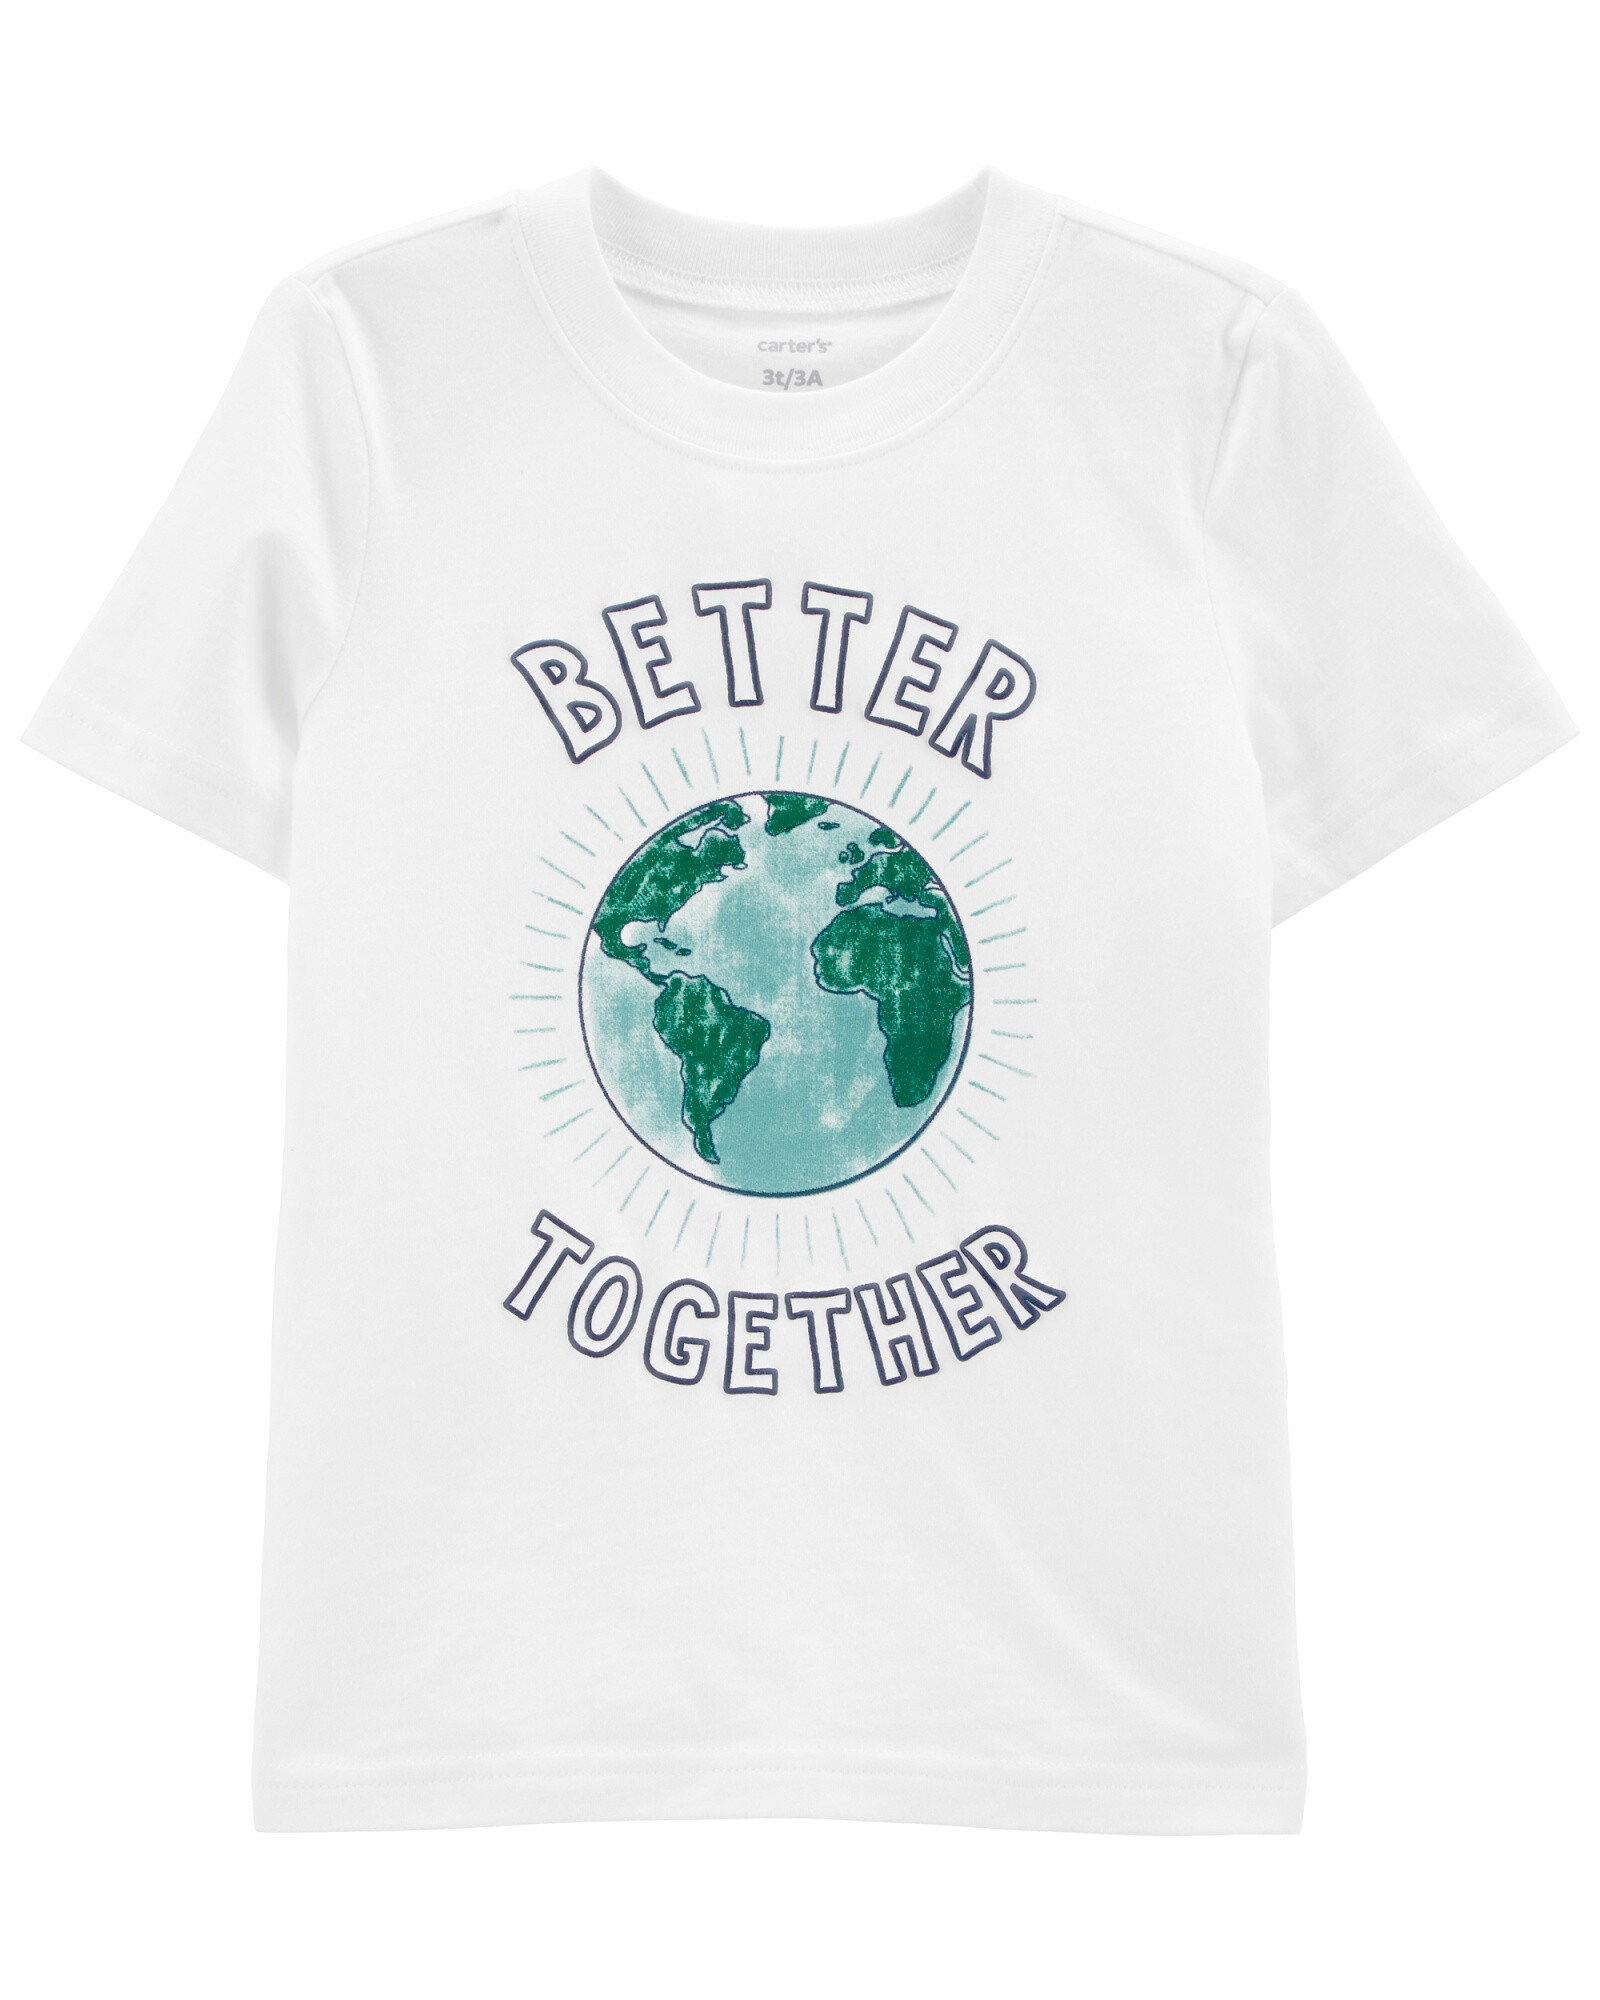 Remera de jersey manga corta "better together" 0